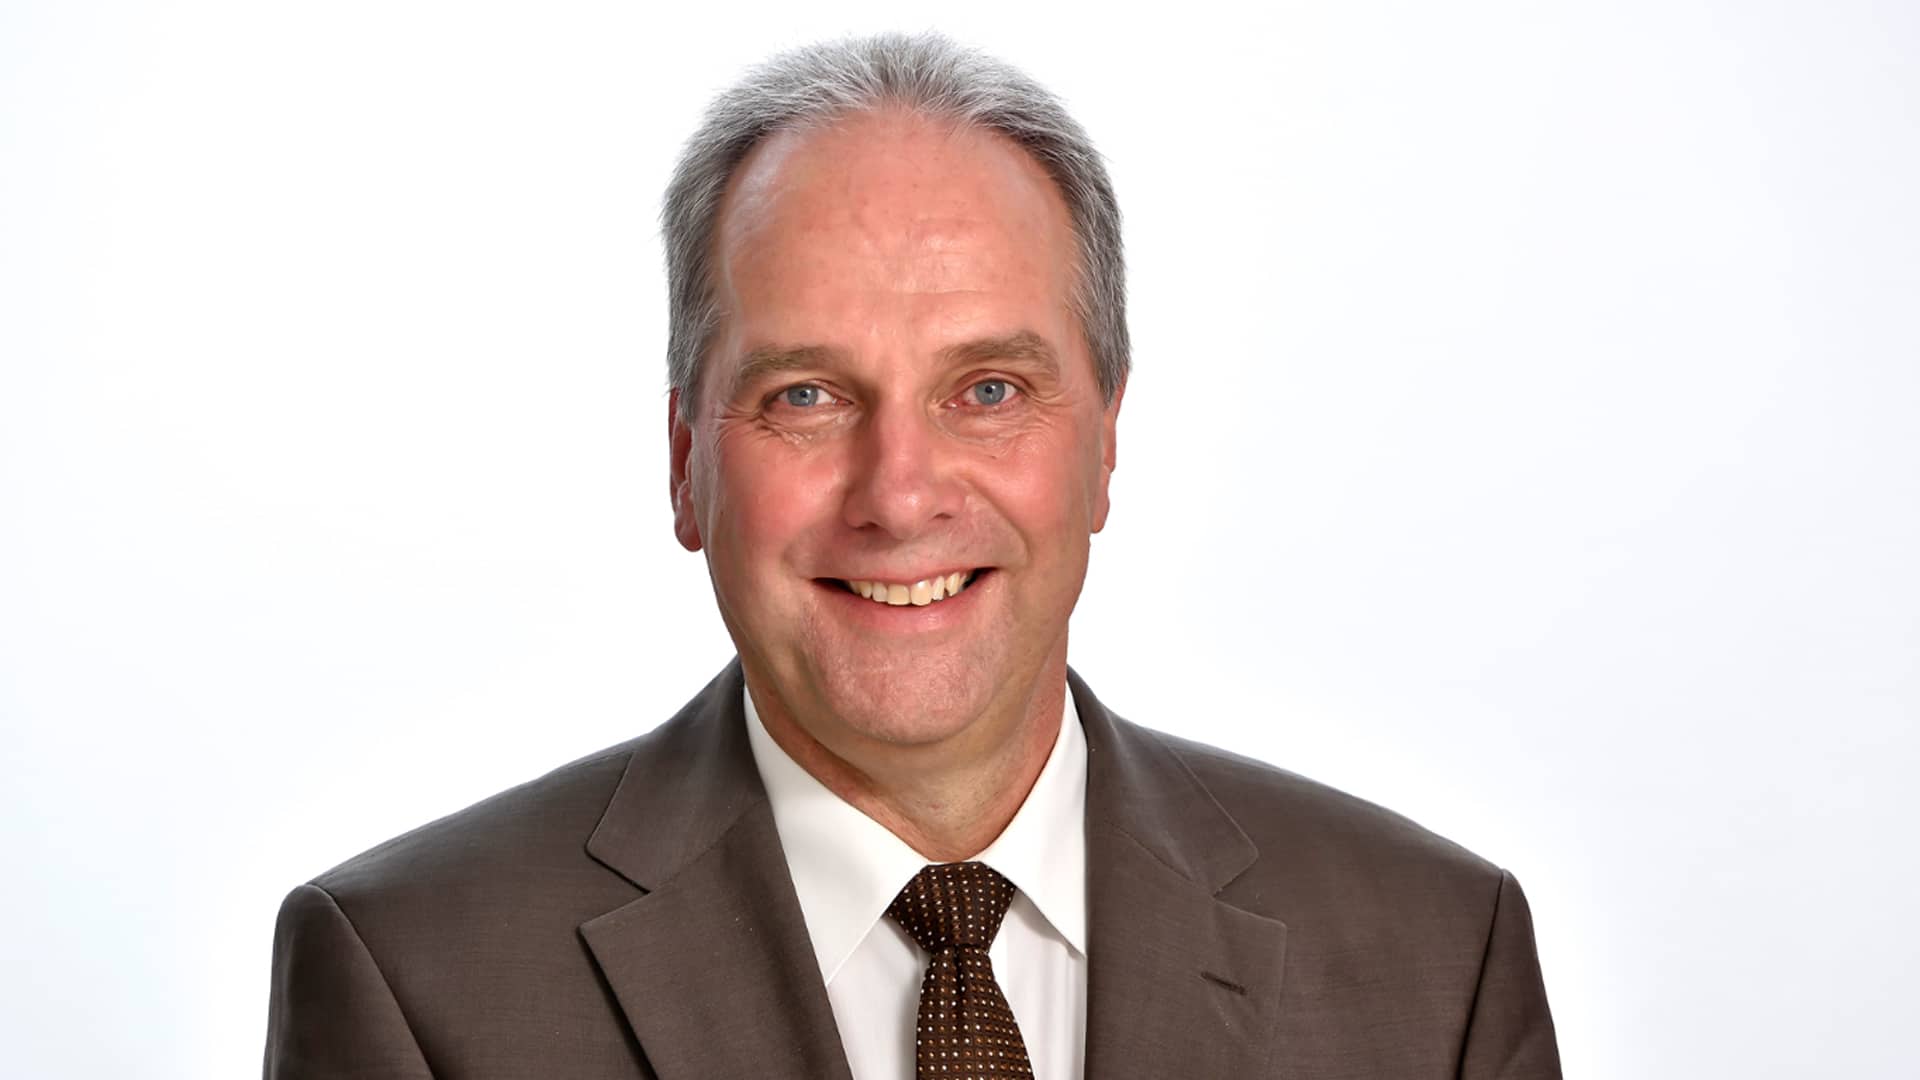 Michael Diener ist Mitglied im Rat der Evangelischen Kirche in Deutschland und war bis 2016 Vorsitzender der Deutschen Evangelischen Allianz